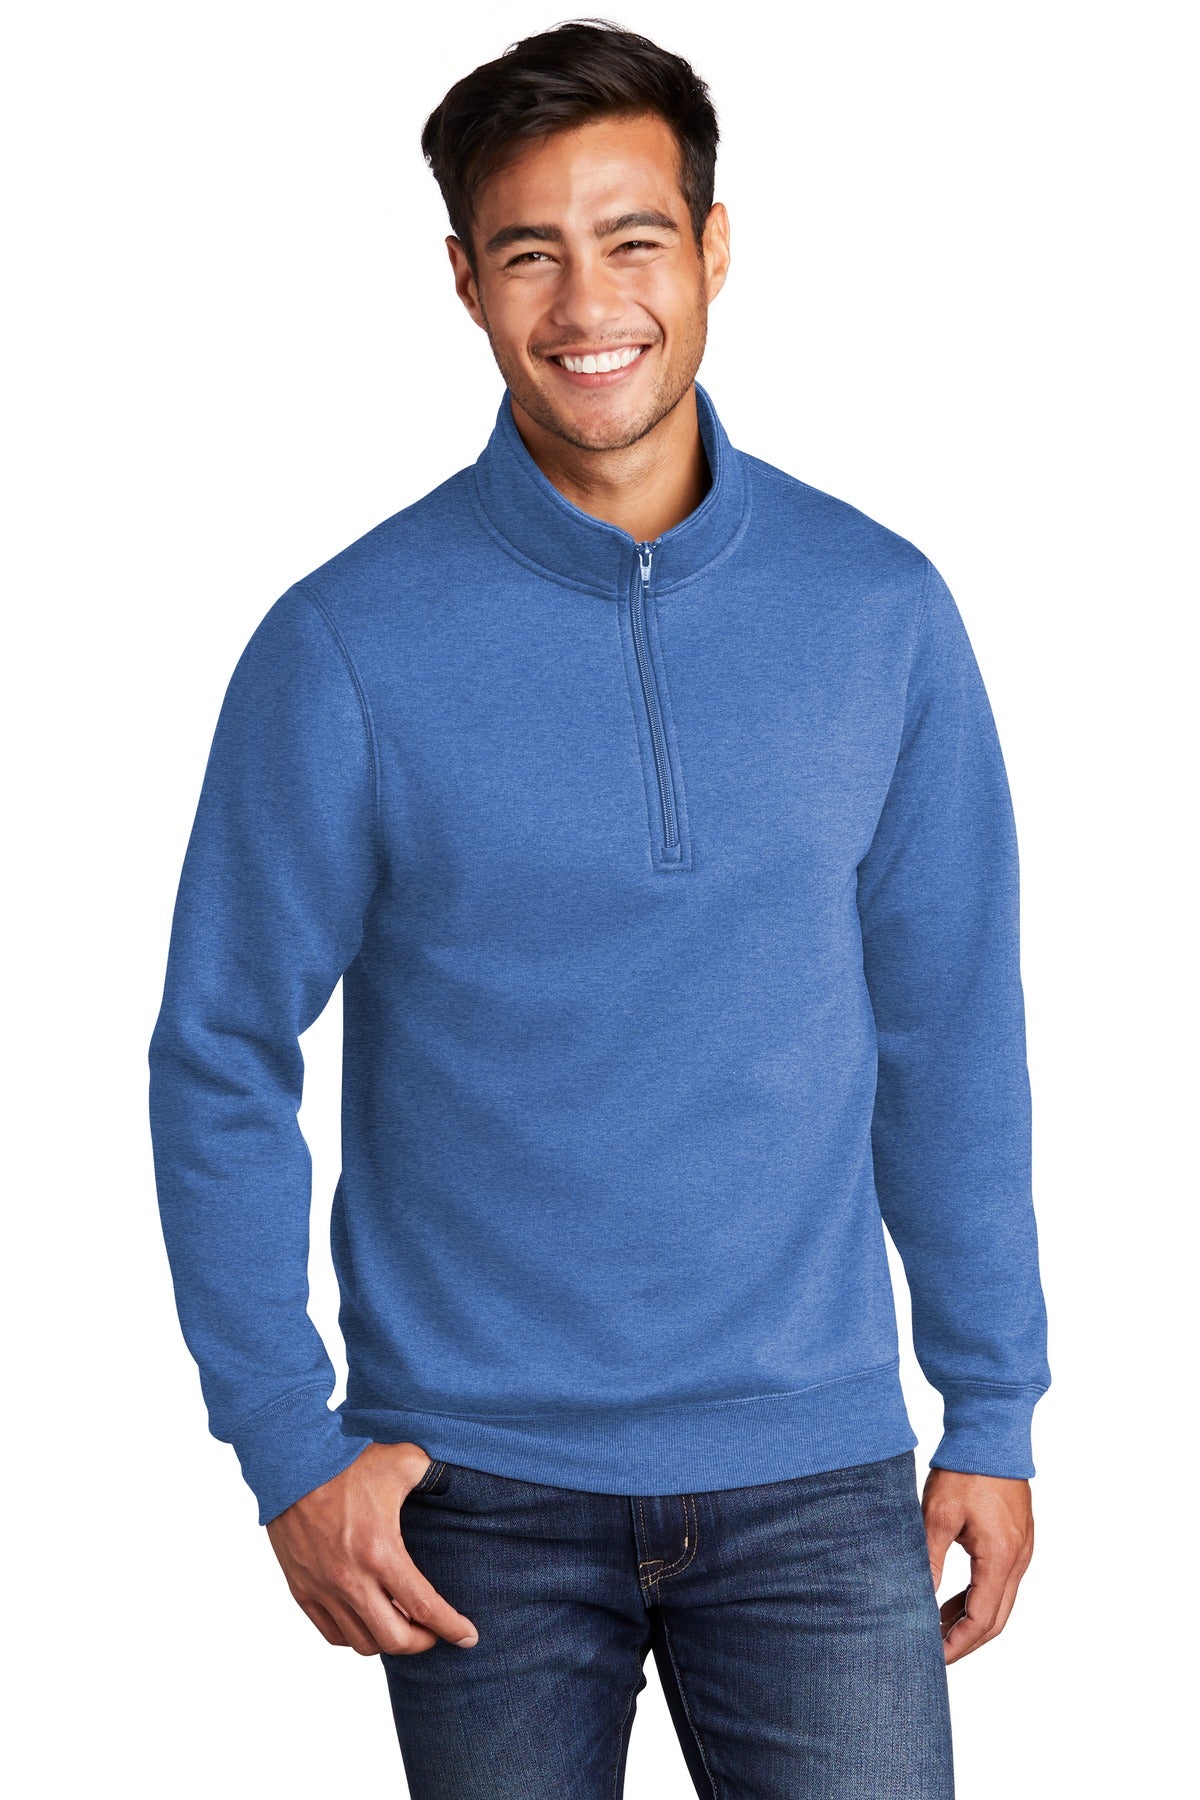 Sweatshirts/Fleece Heather Royal Port & Company